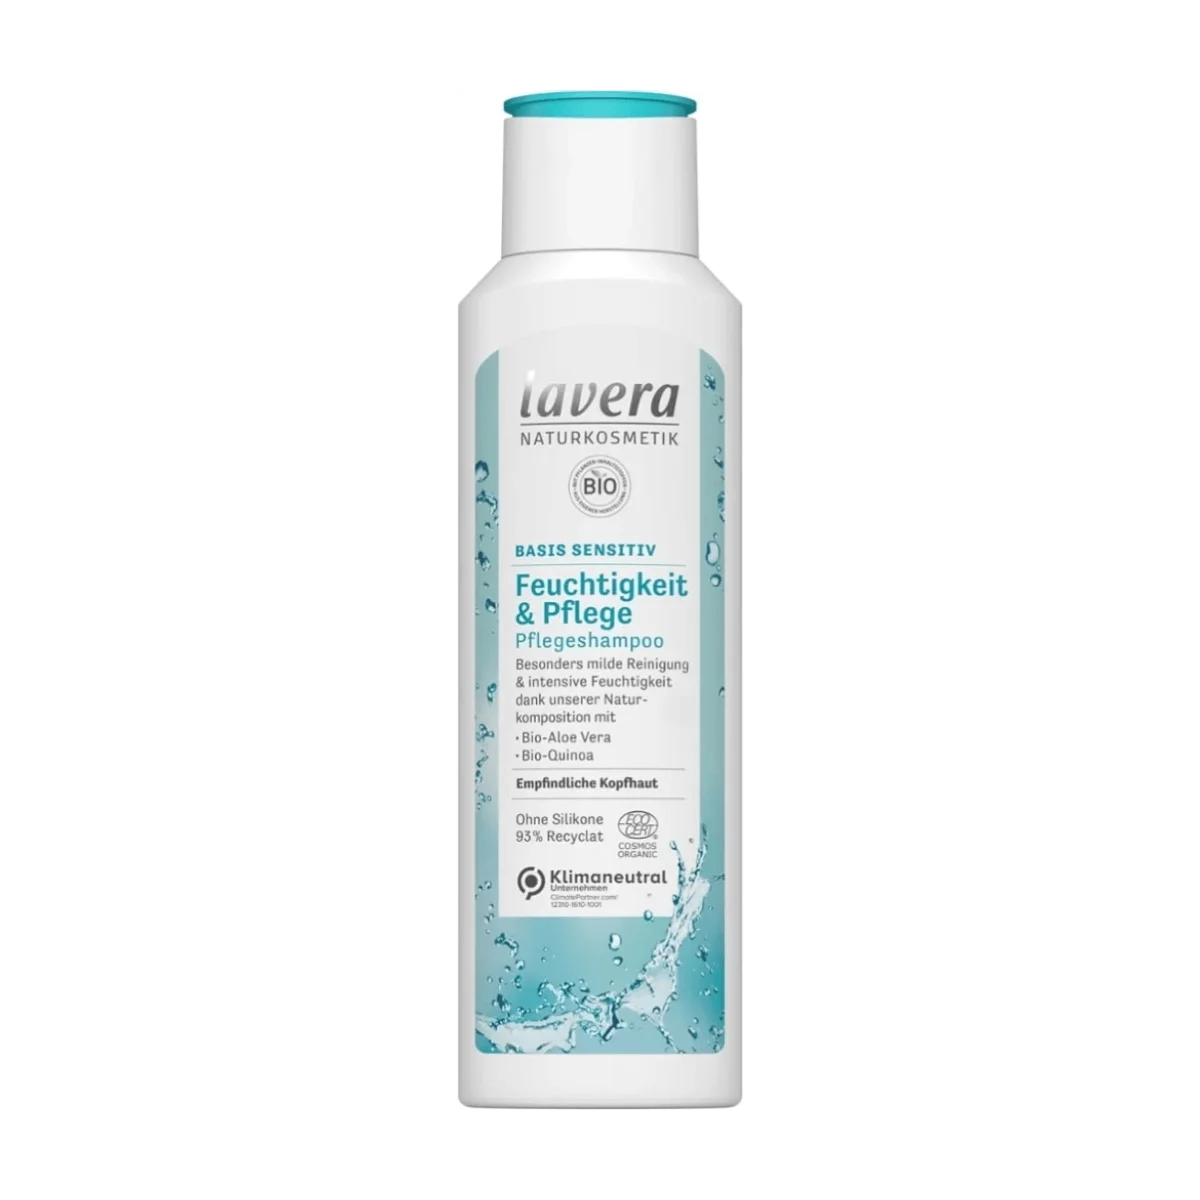 lavera Shampoo Basis Sensitiv, Feuchtigkeit & Pflege, 250 ml